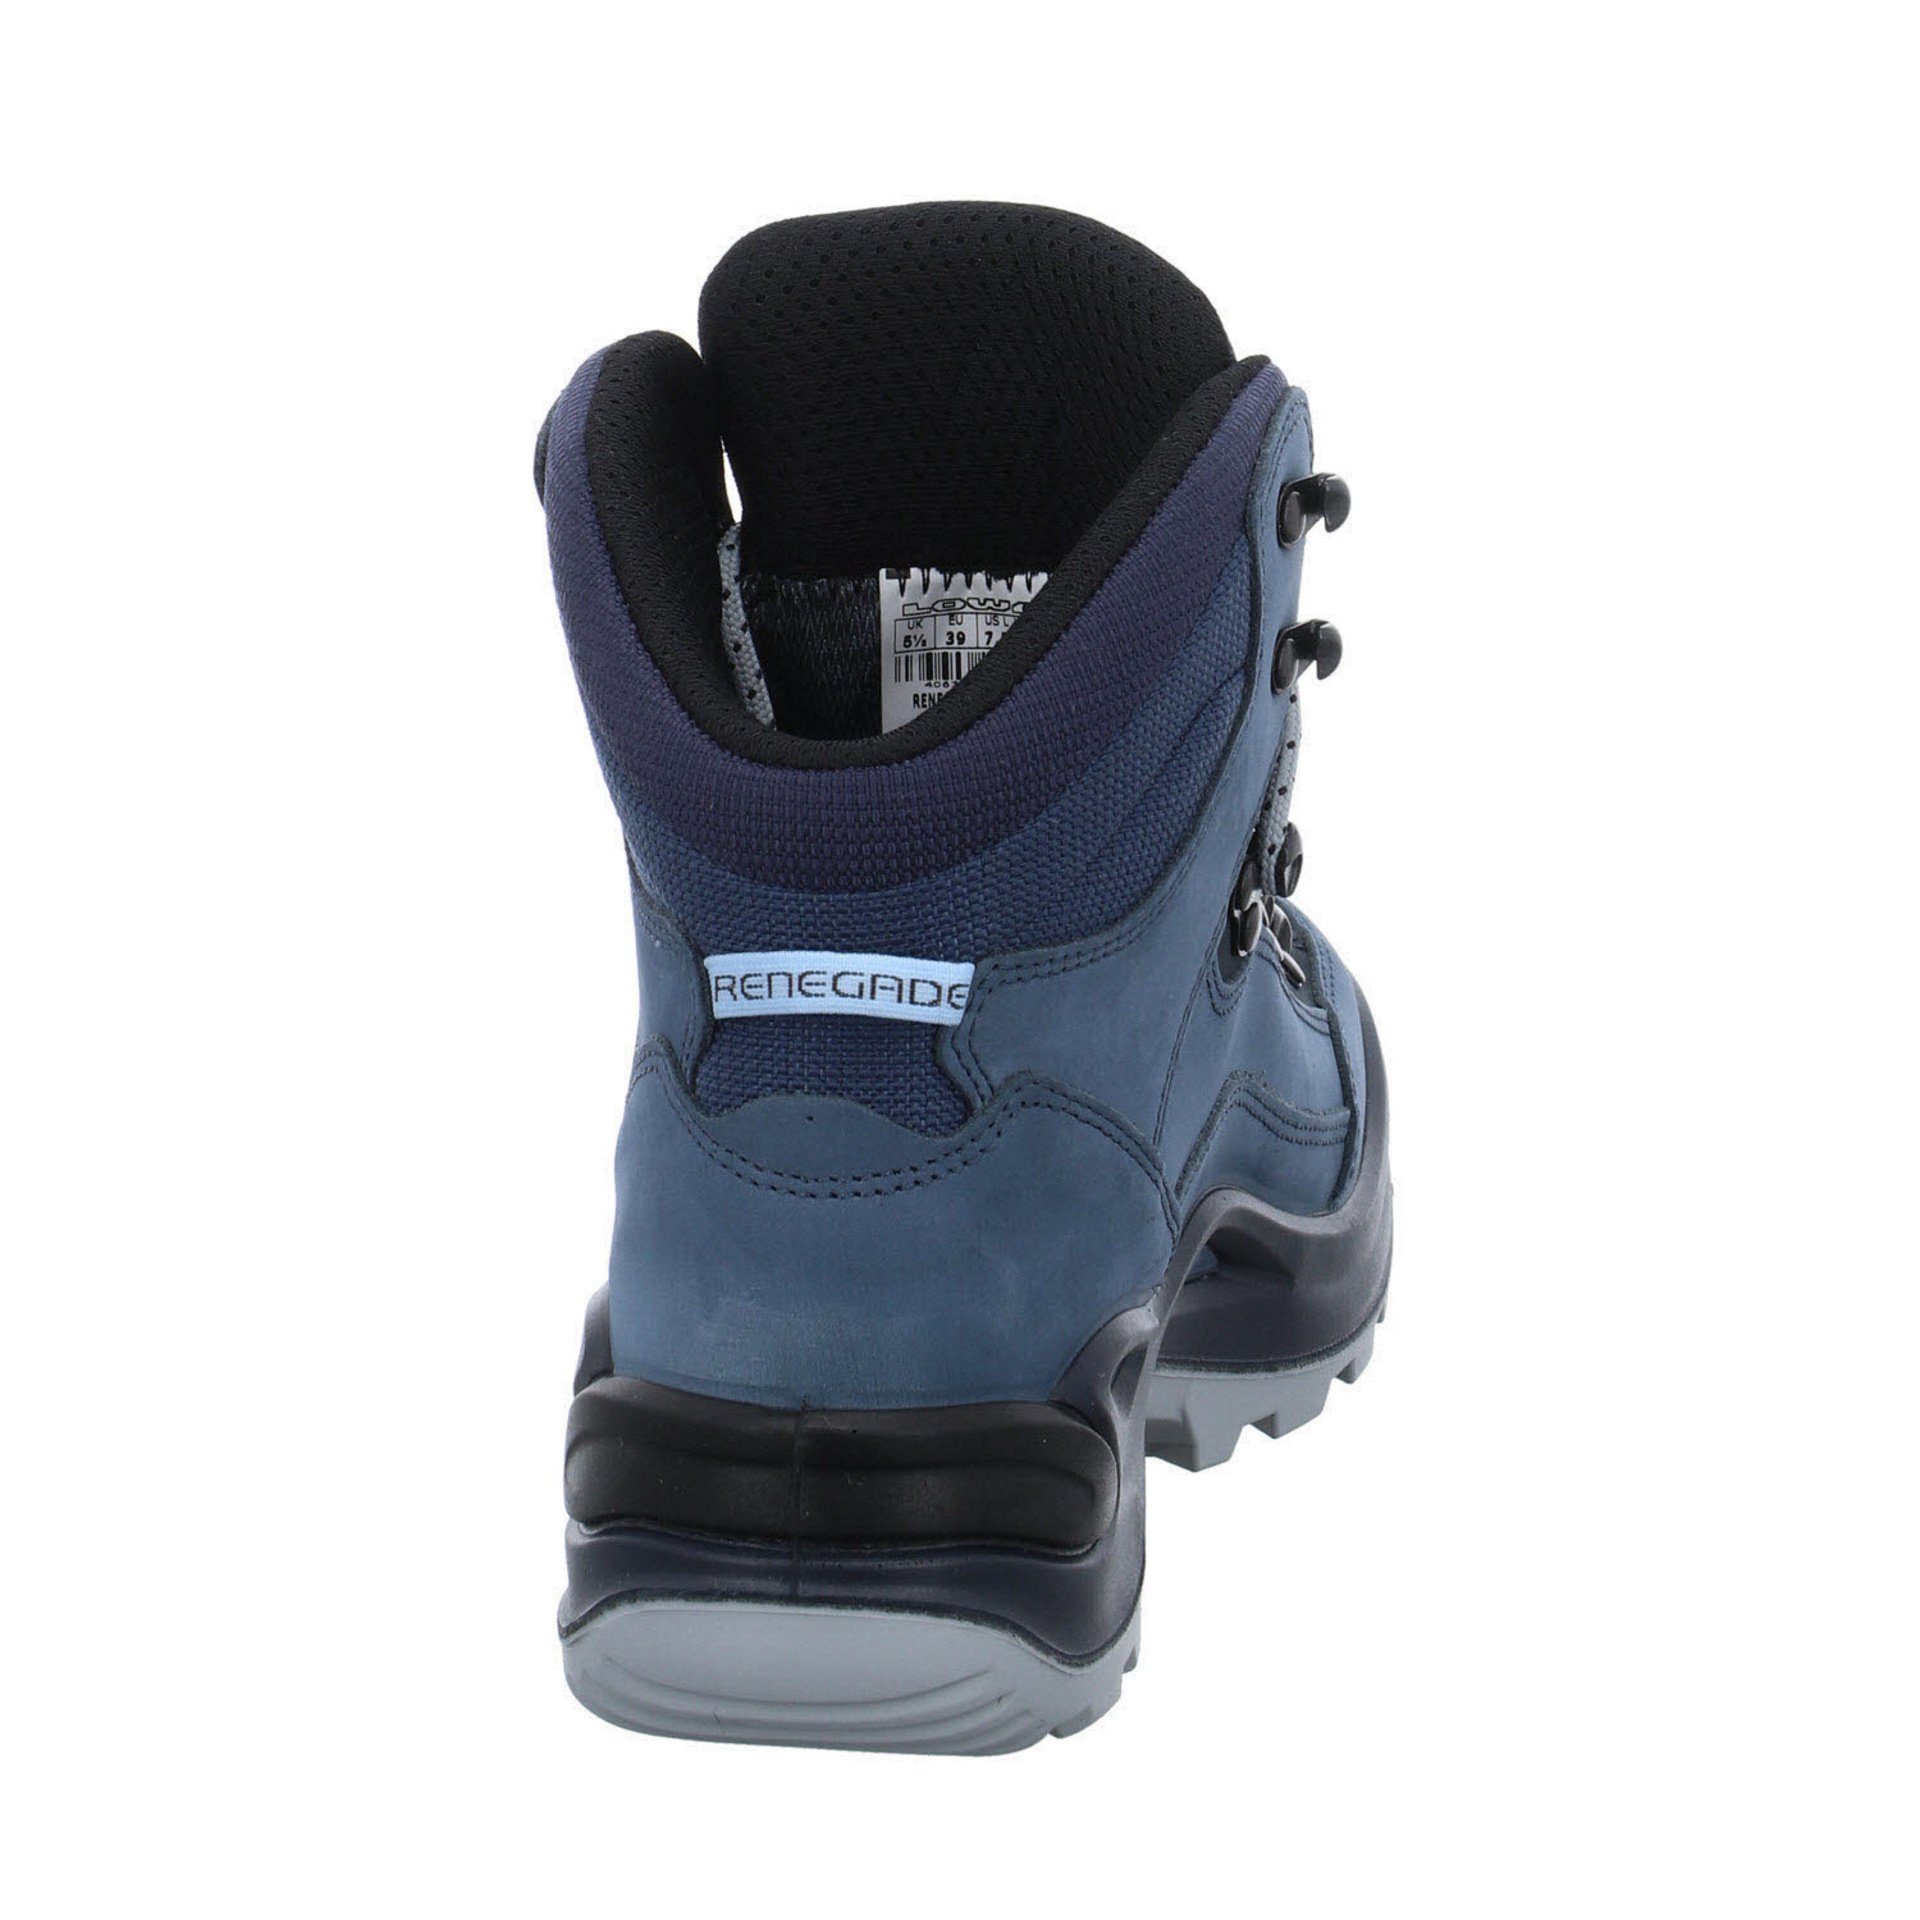 Outdoorschuh smoke Schuhe blue GTX Outdoorschuh mid Leder-/Textilkombination Outdoor Renegade Lowa Damen